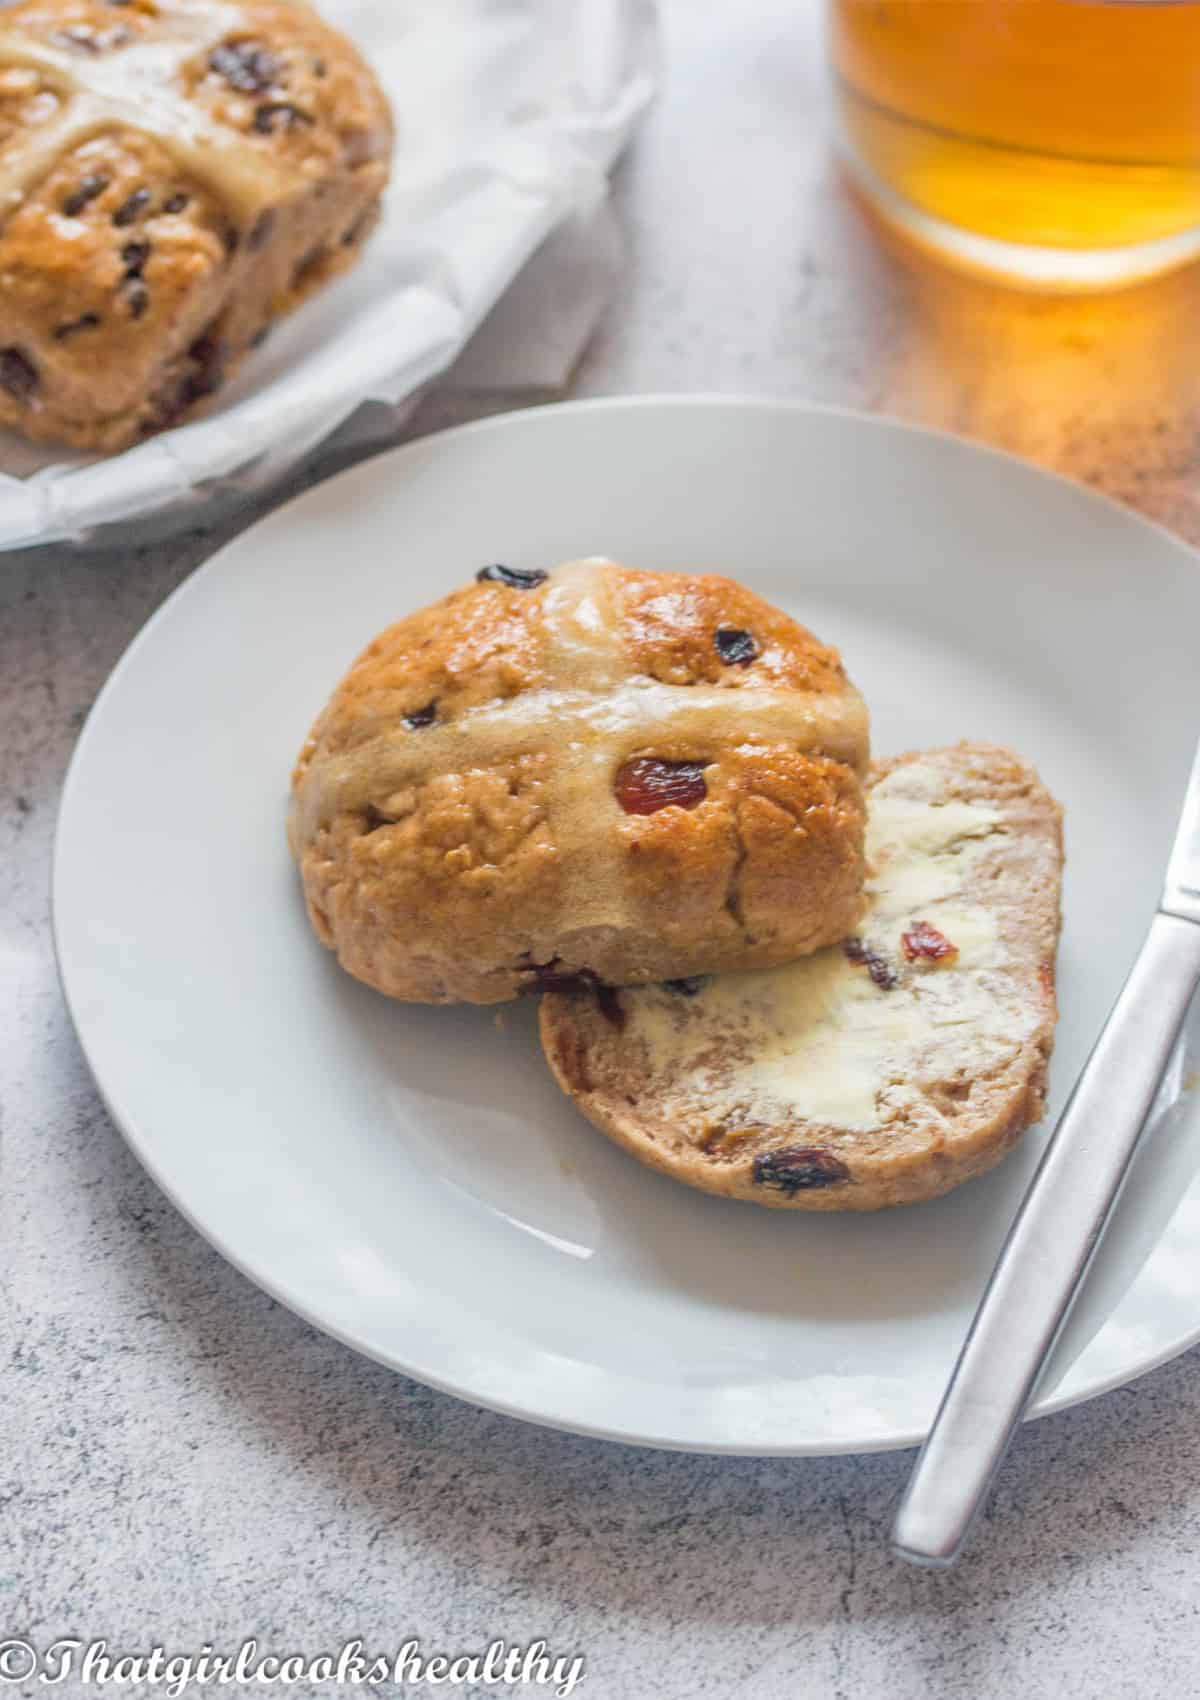 Hot cross bun with vegan butter